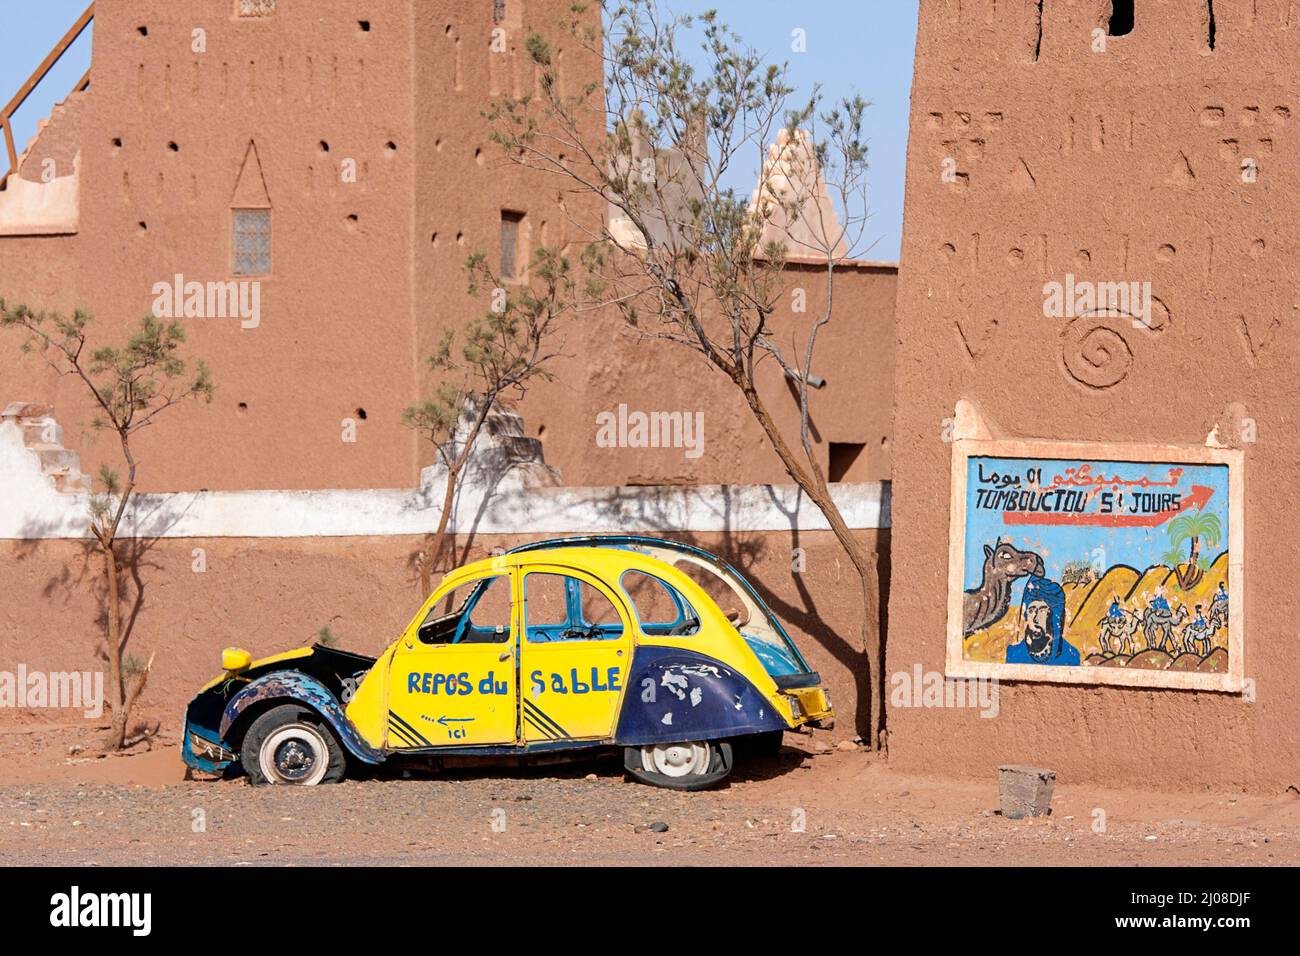 Firma sulla tradizionale casa di fango nel sud del Marocco vicino al vecchio relitto auto mostrando giorni a dorso di cammello a Timbuktu, attraverso il deserto del Sahara nel Marocco centrale Foto Stock